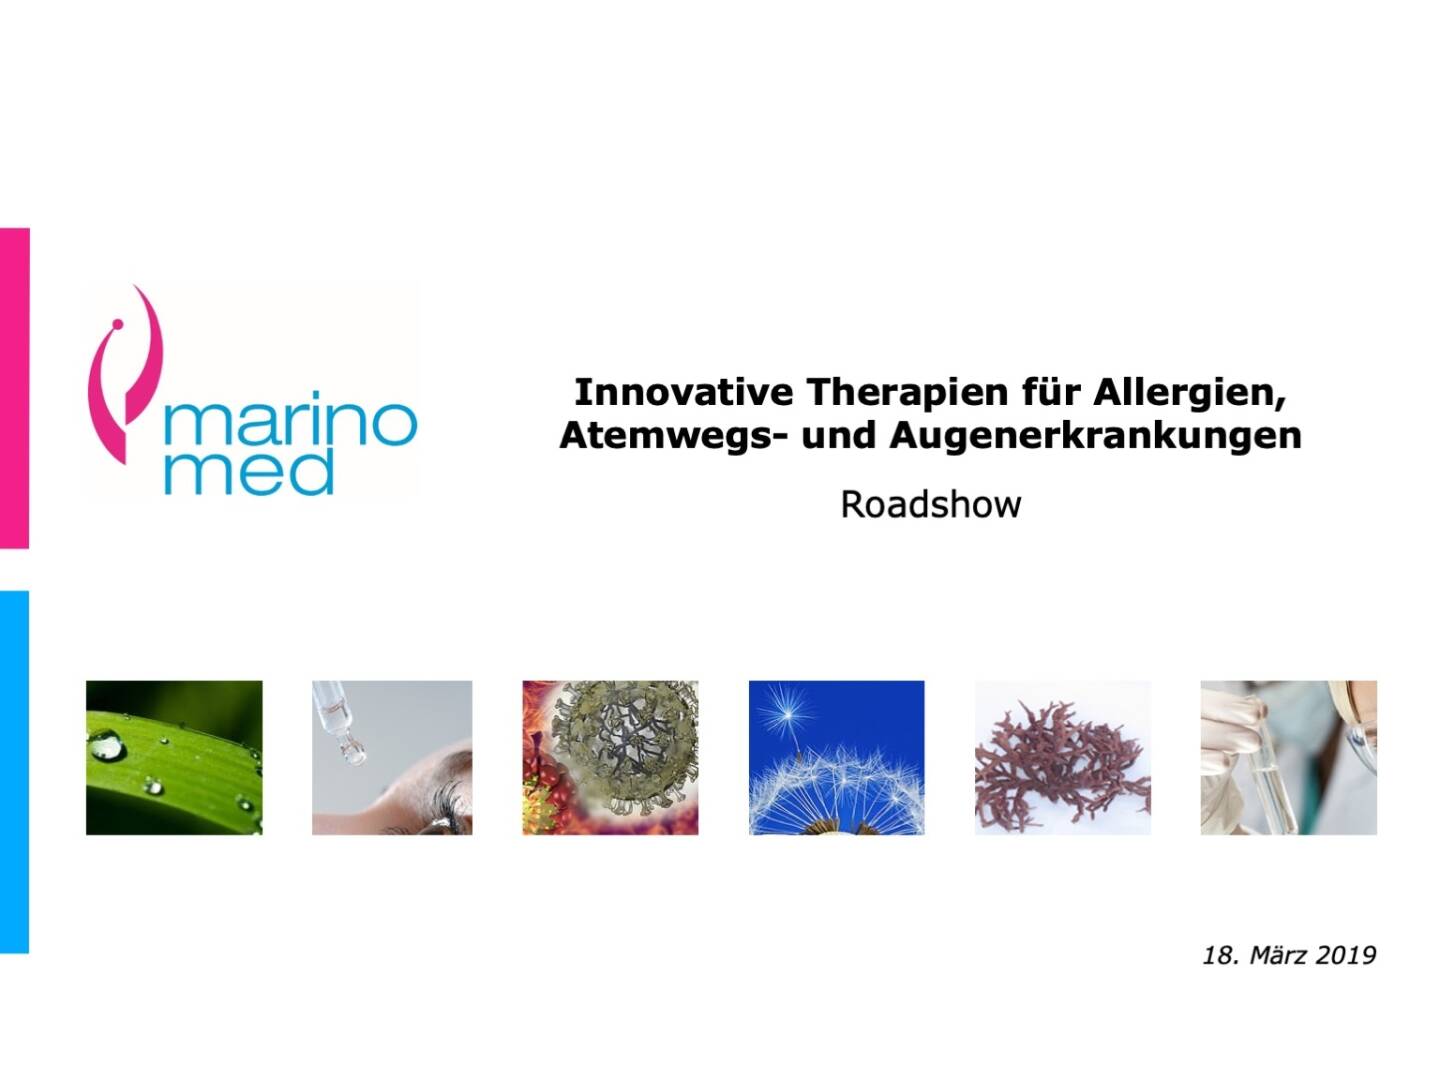 Marinomed - Innovative Therapien für Allergien, Atemwegs- und Augenerkrankungen